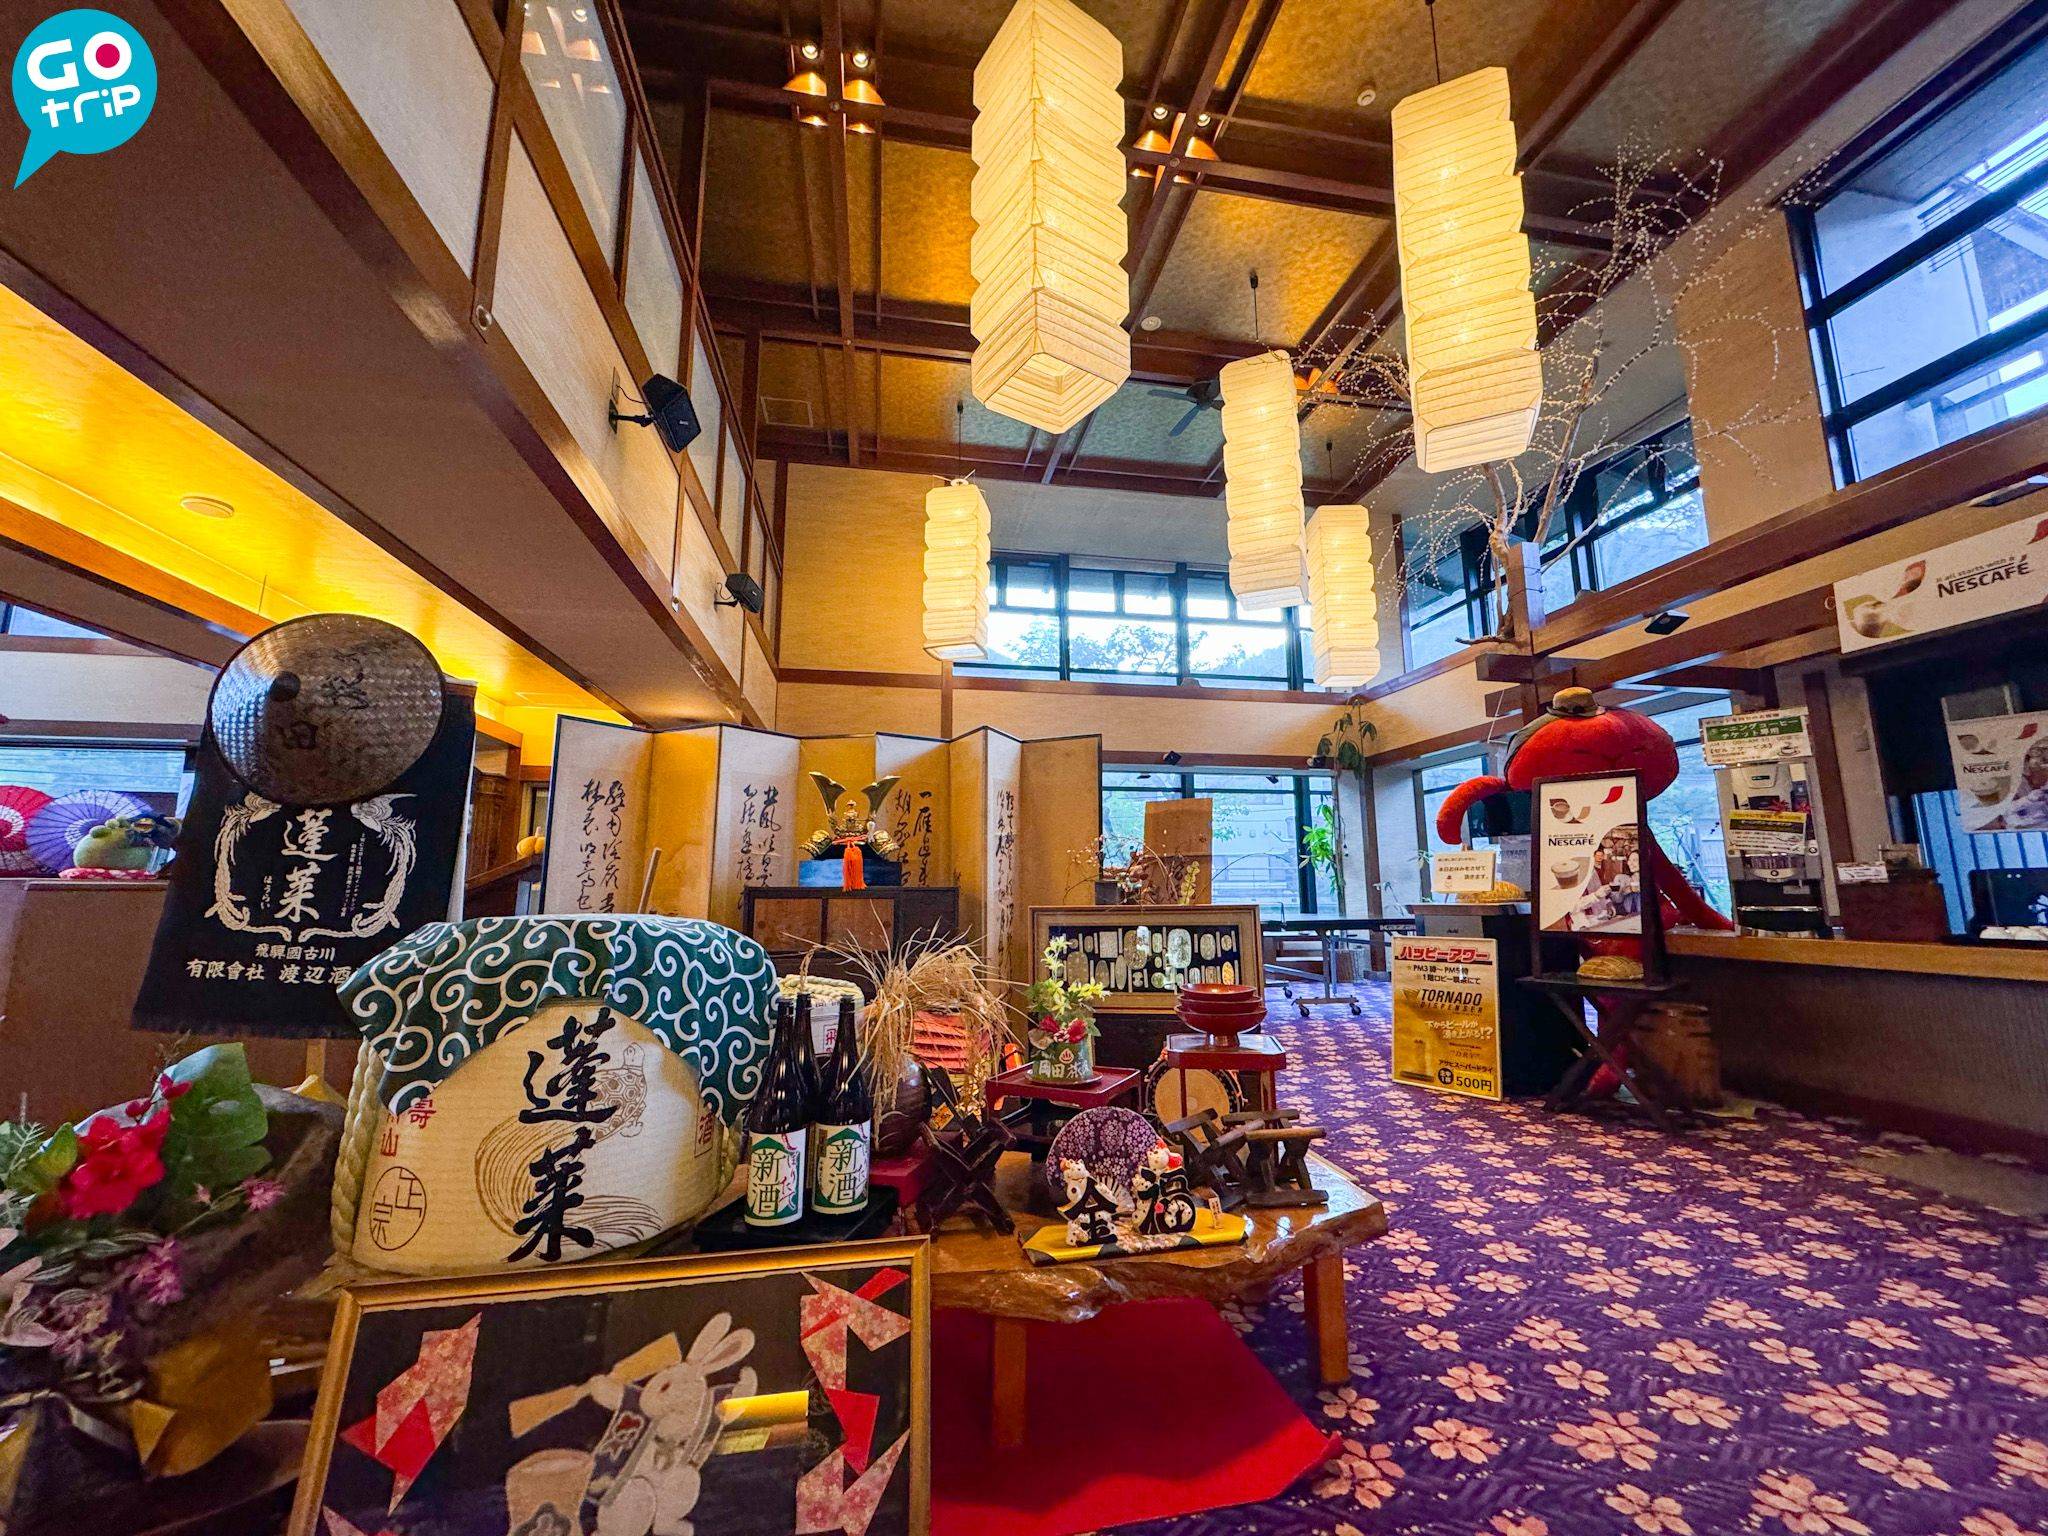 名古屋自由行 岡田旅館充滿傳統溫泉旅館氣氛。